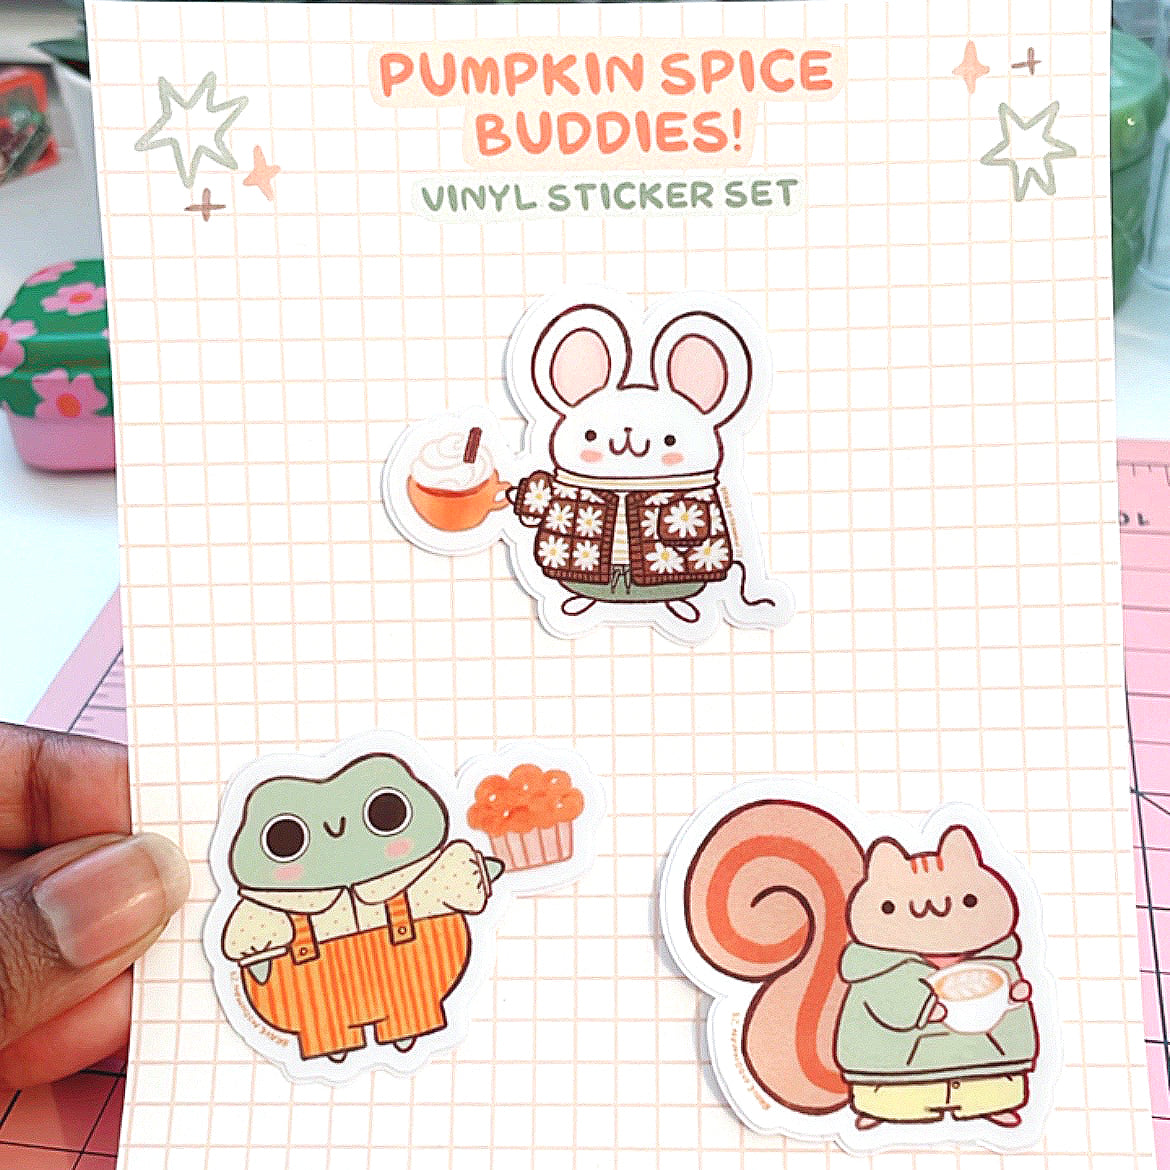 Pumpkin Spice Buddies Vinyl Sticker Set